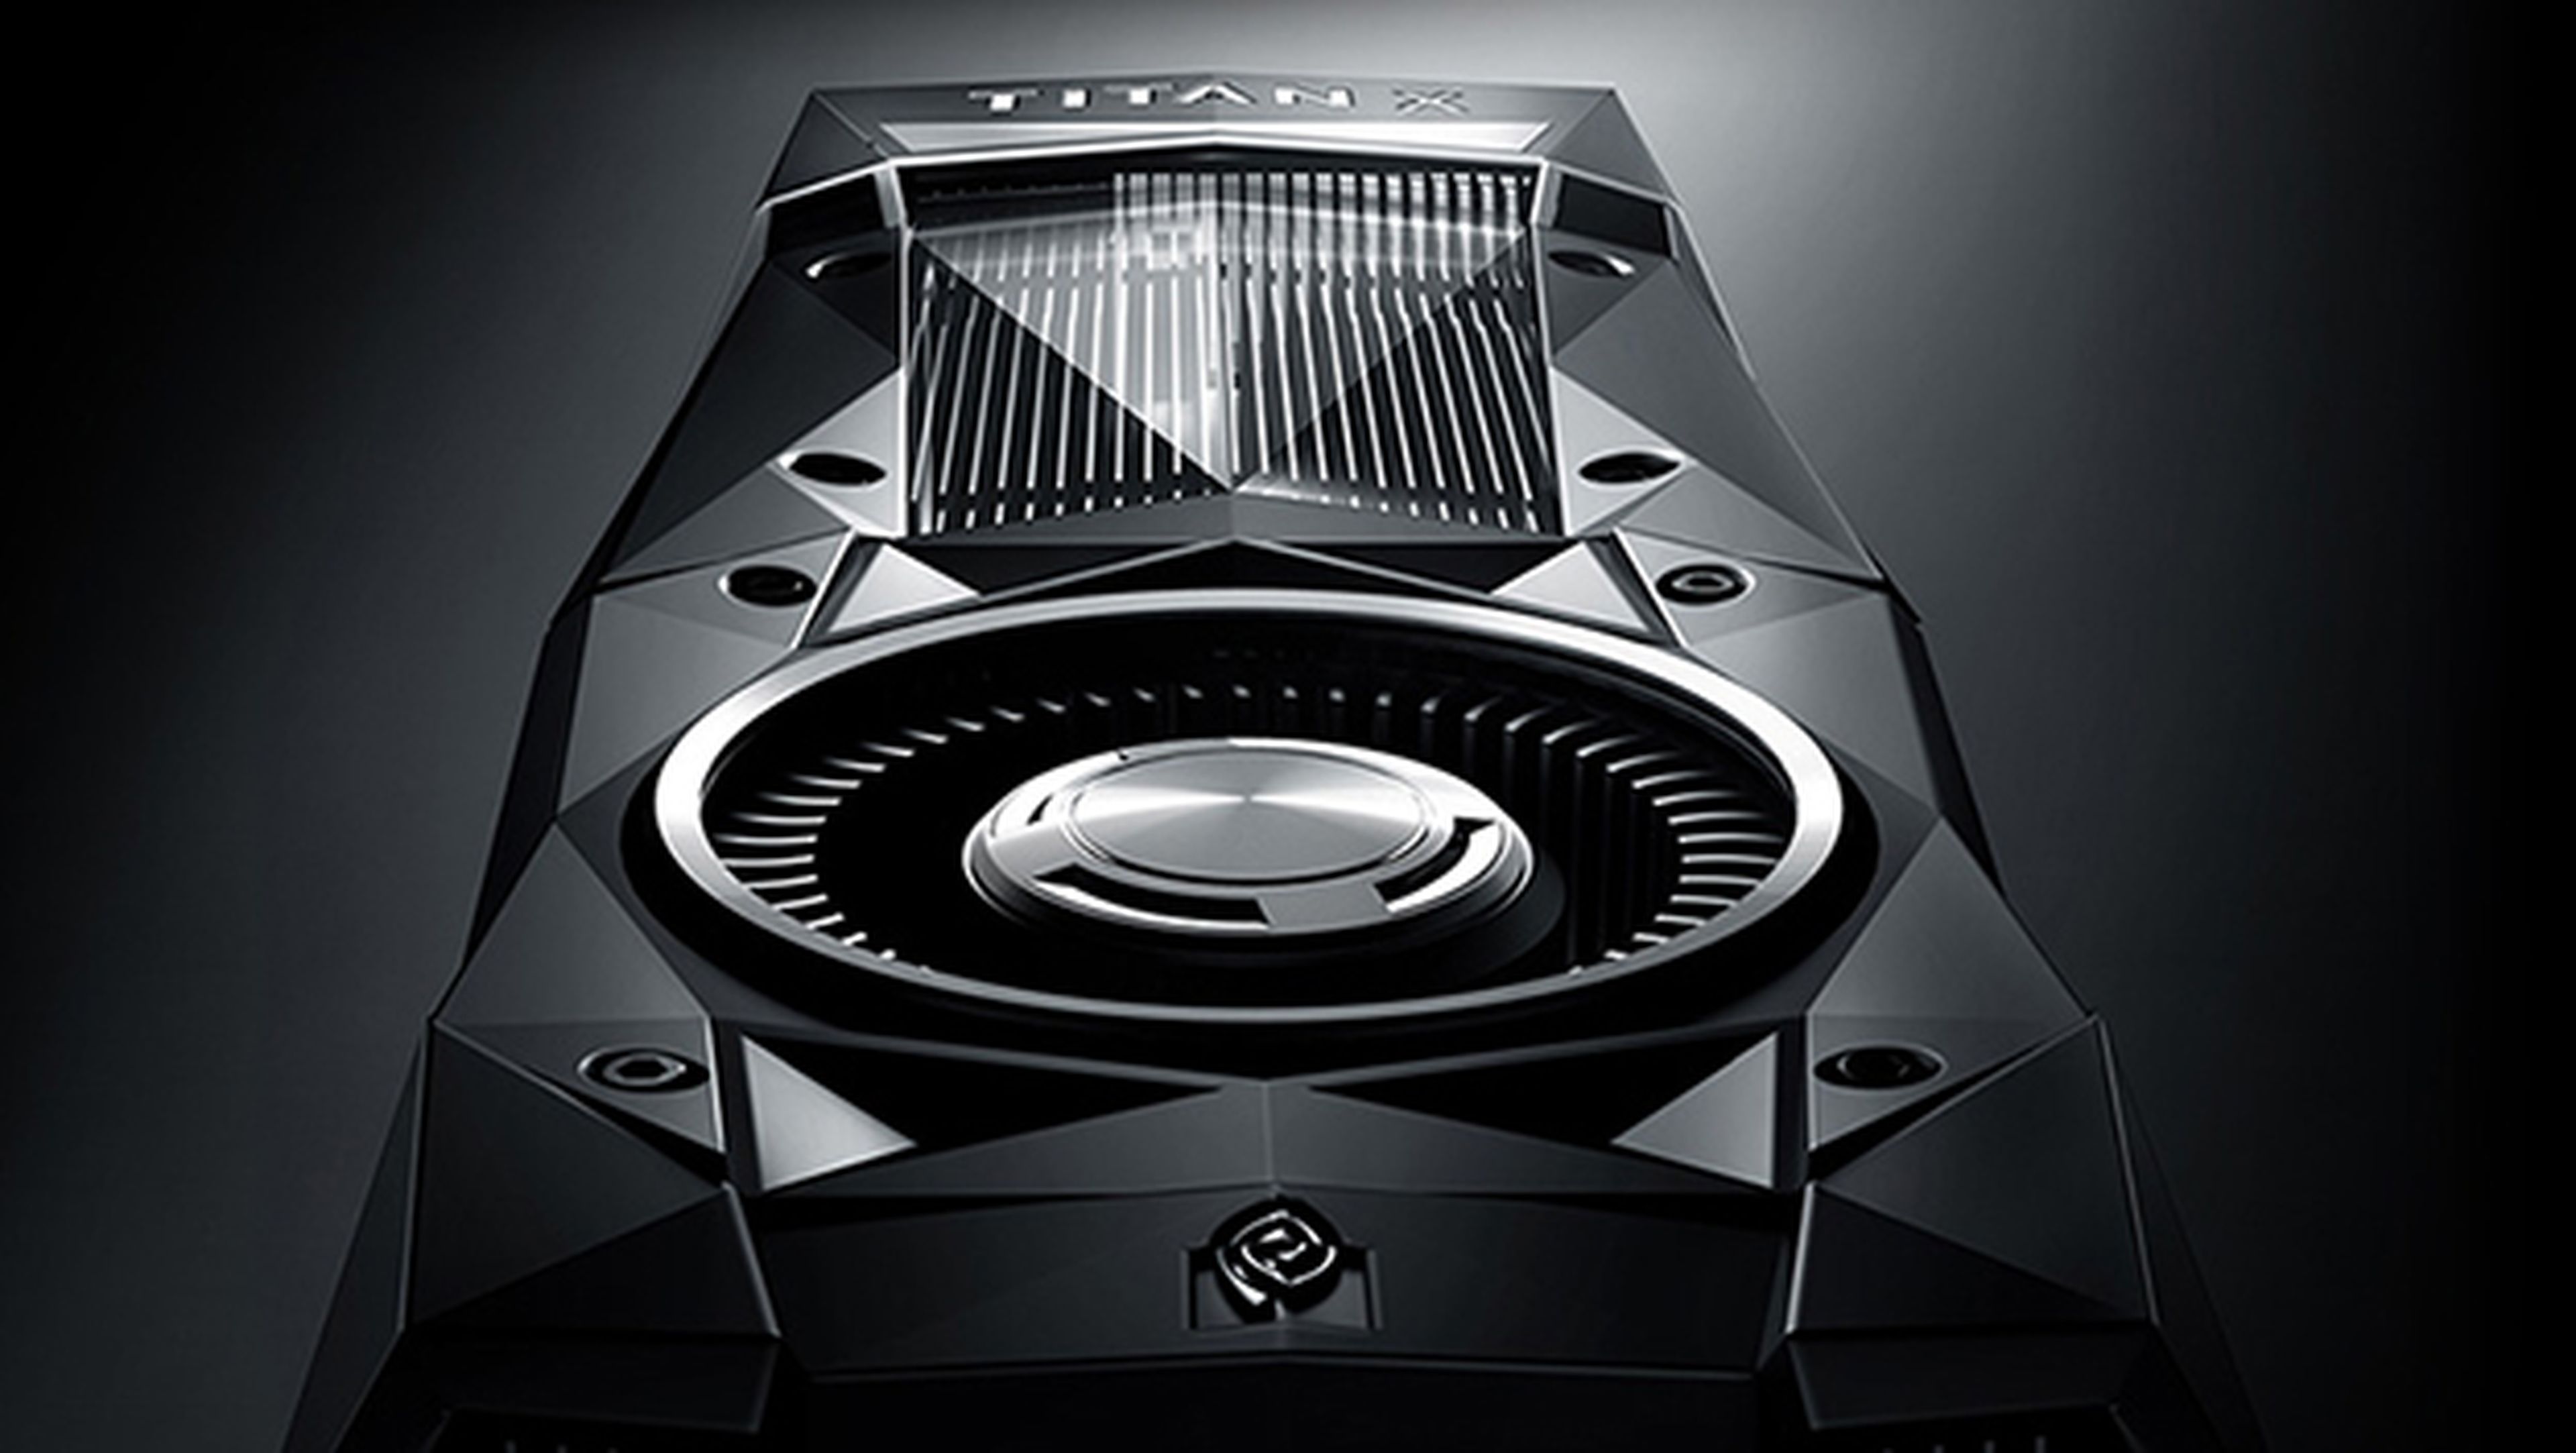 Nueva Nvidia GTX Titan X con arquitectura pascal